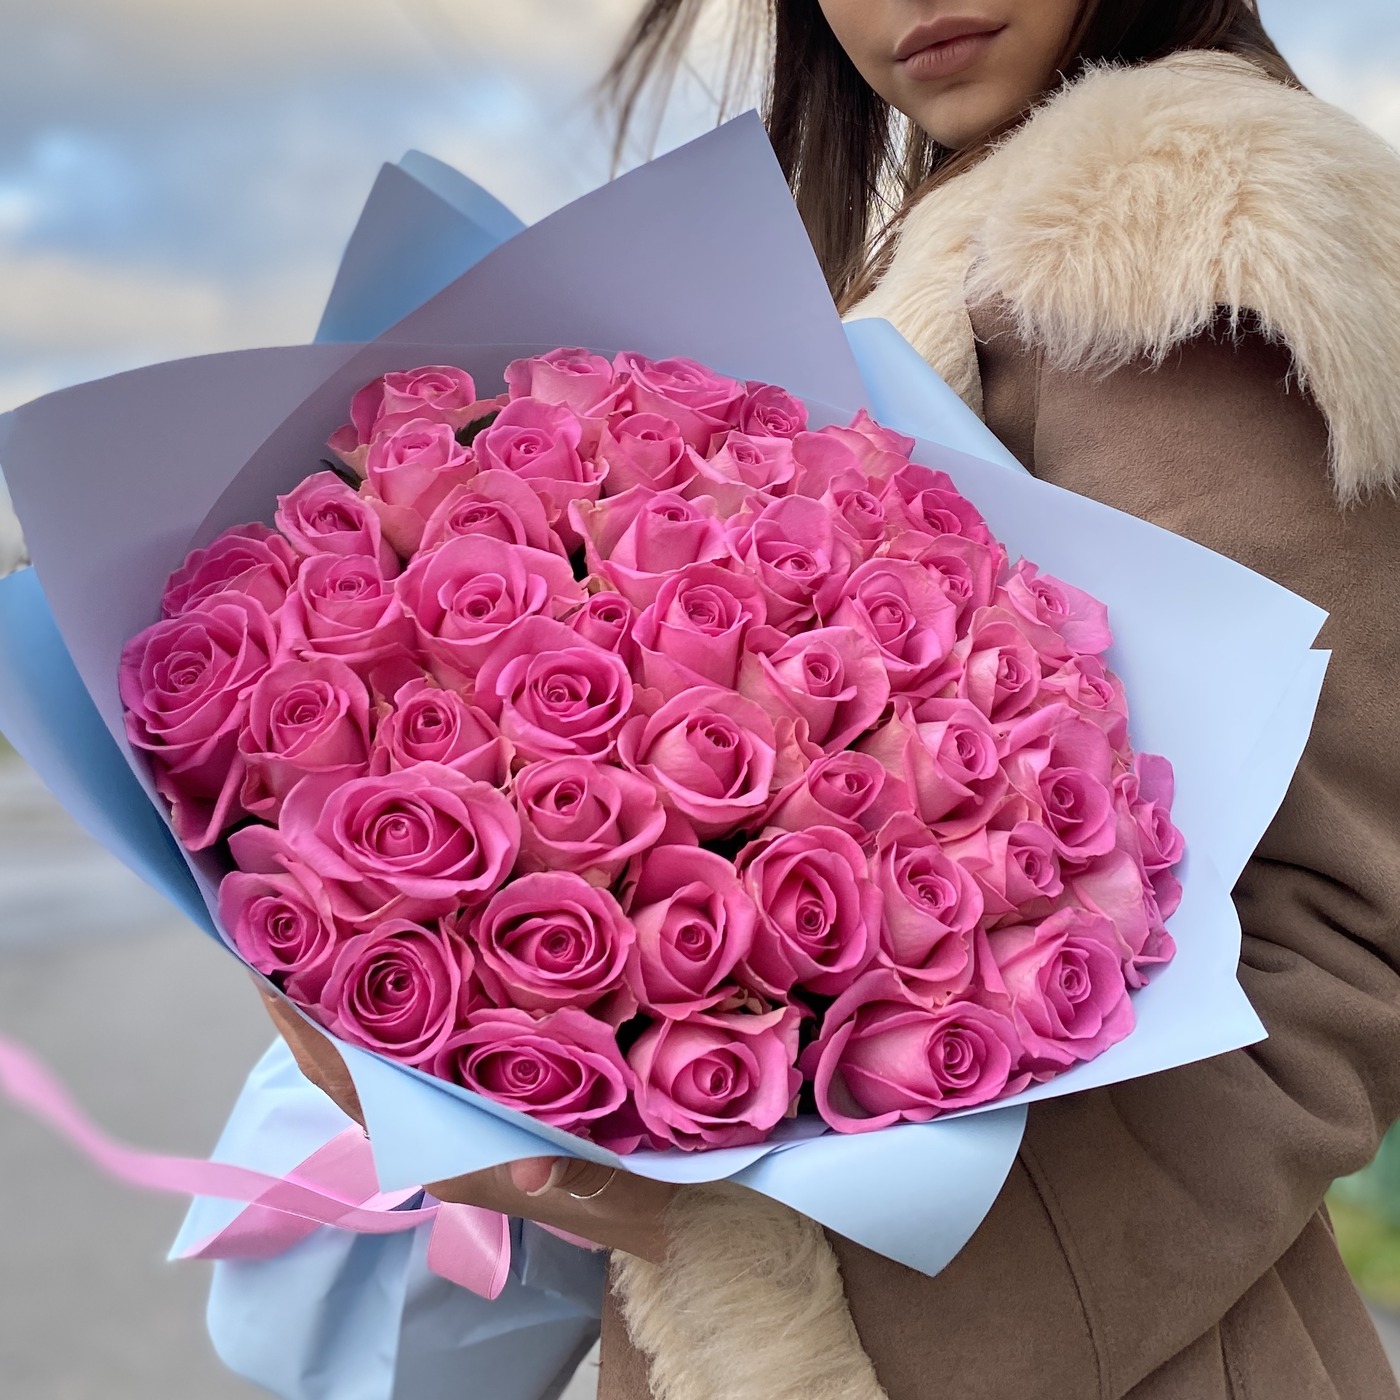 Купить букет 51 роза в москве недорого доставка цветов в махачкале недорого